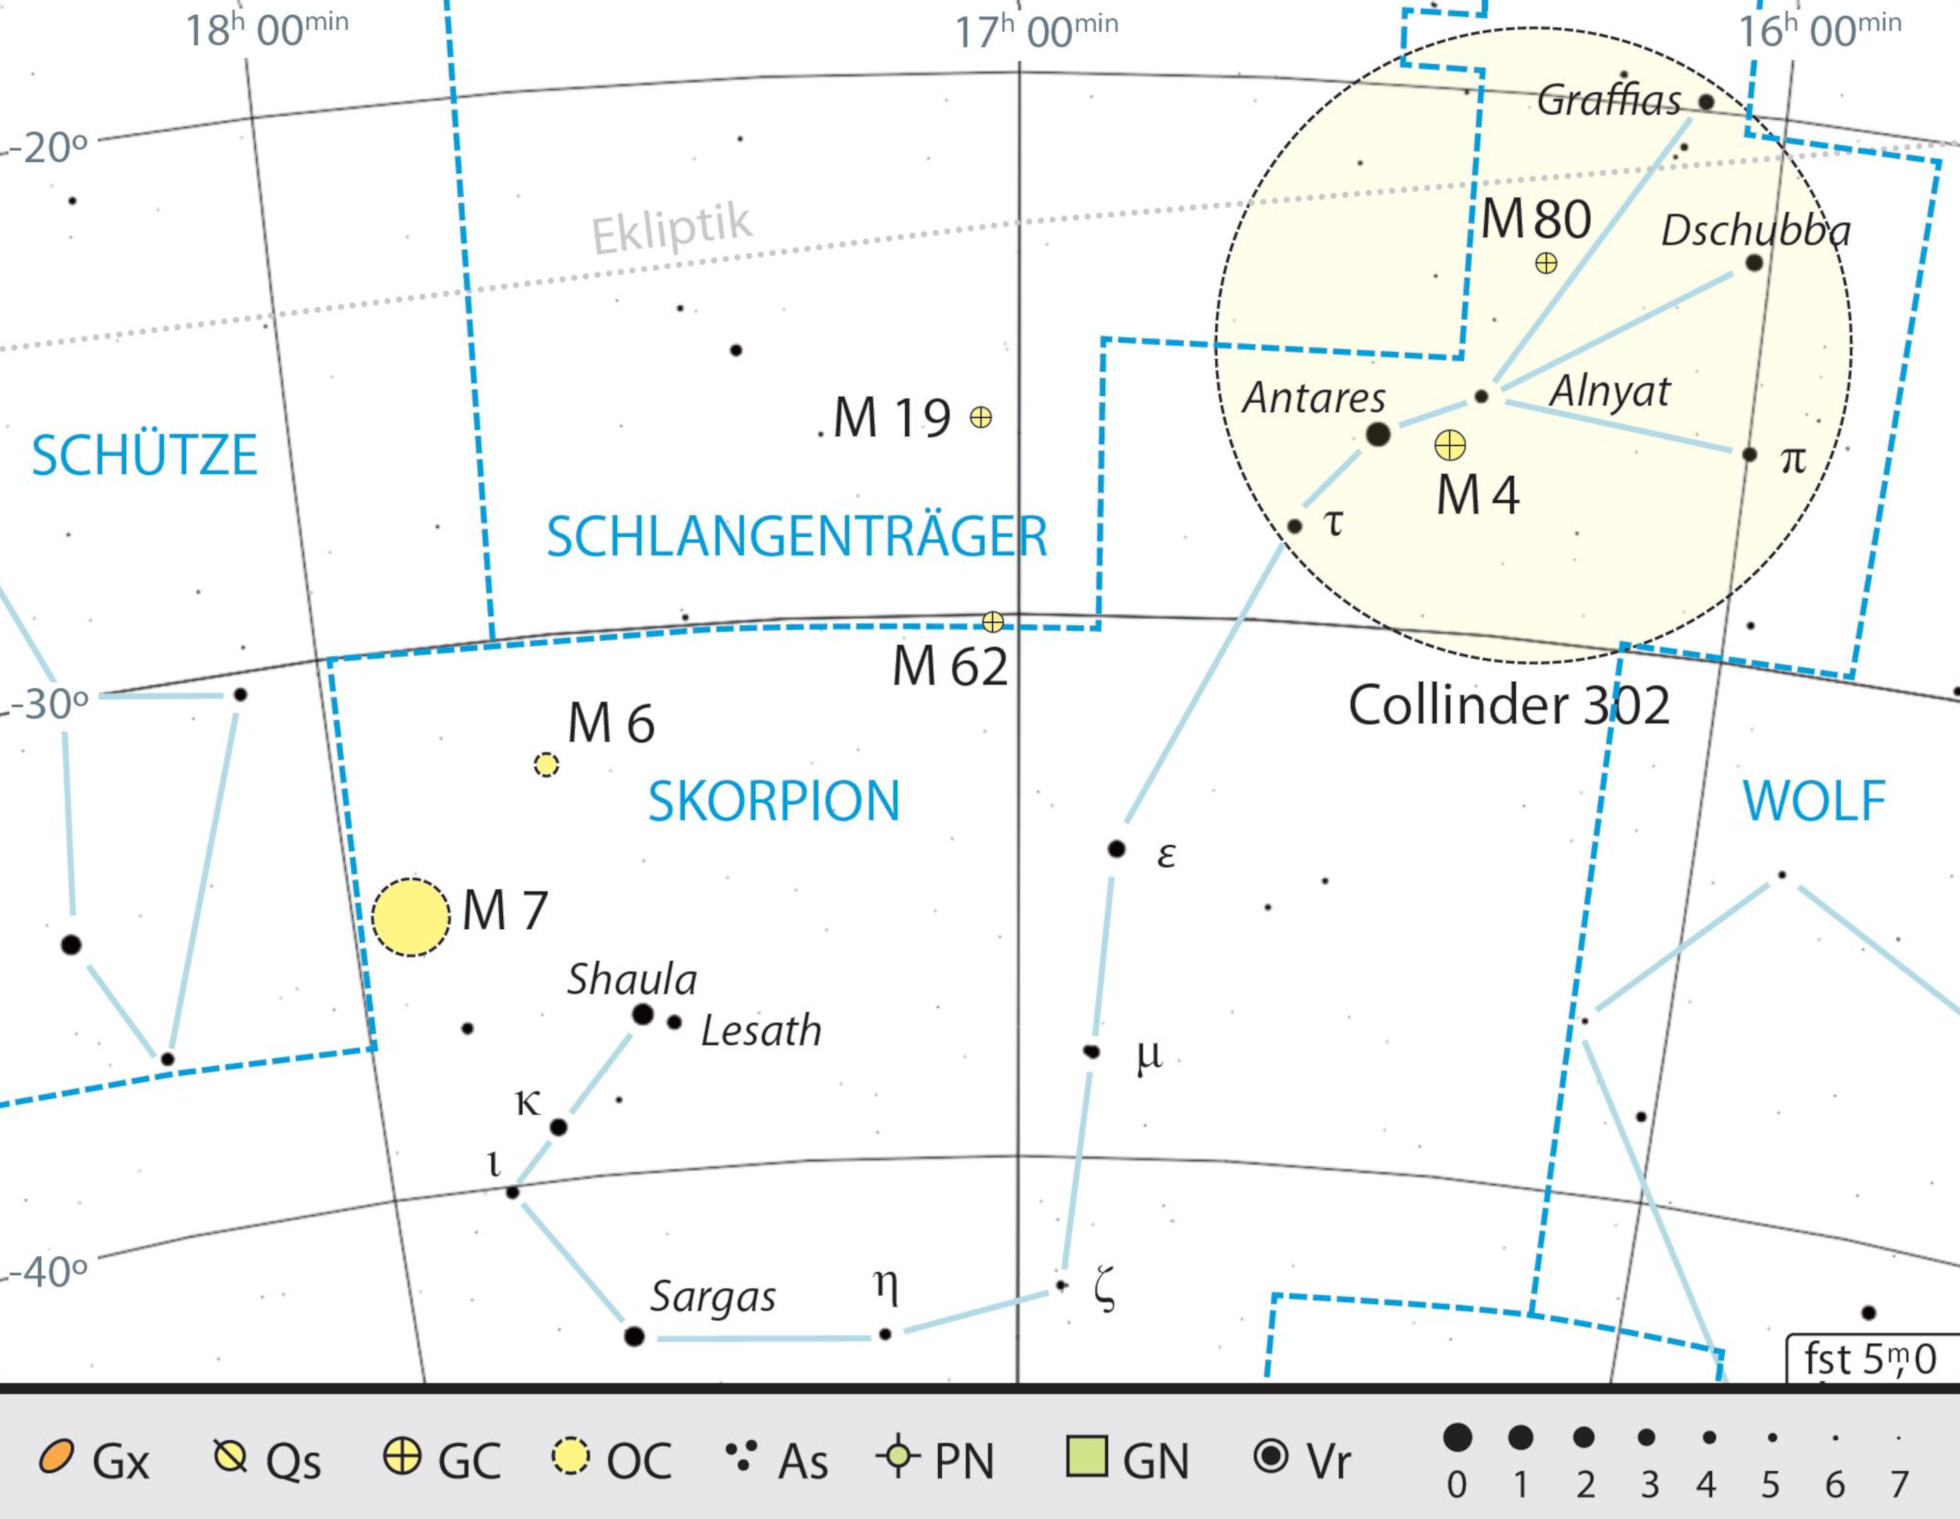 Mapa przeglądowa gwiazdozbioru Skorpiona z polecanymi celami obserwacyjnymi; duży okrąg obejmuje gromadę ruchomą Antaresa. Kai v. Schauroth